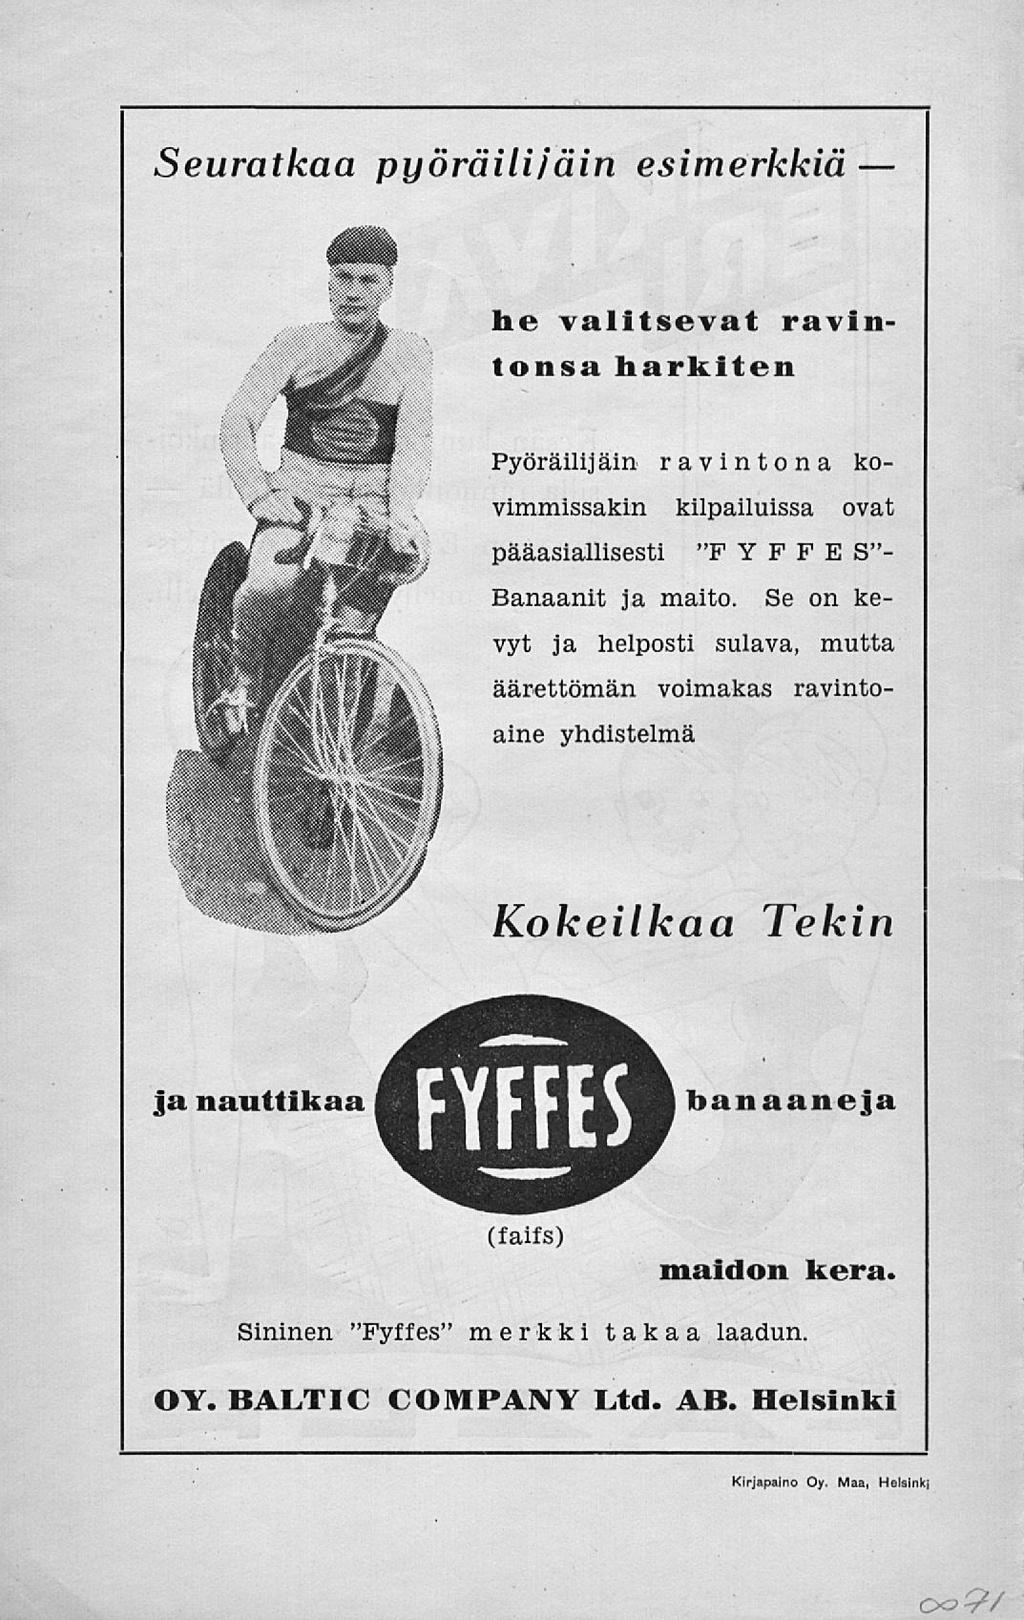 Seuratkaa pyöräilijäin esimerkkiä he valitsevat ravintonsa harkiten Pyöräilijäin ravintona kovimmissakin kilpailuissa ovat pääasiallisesti "F YF F E S"- Banaanit ja maito.